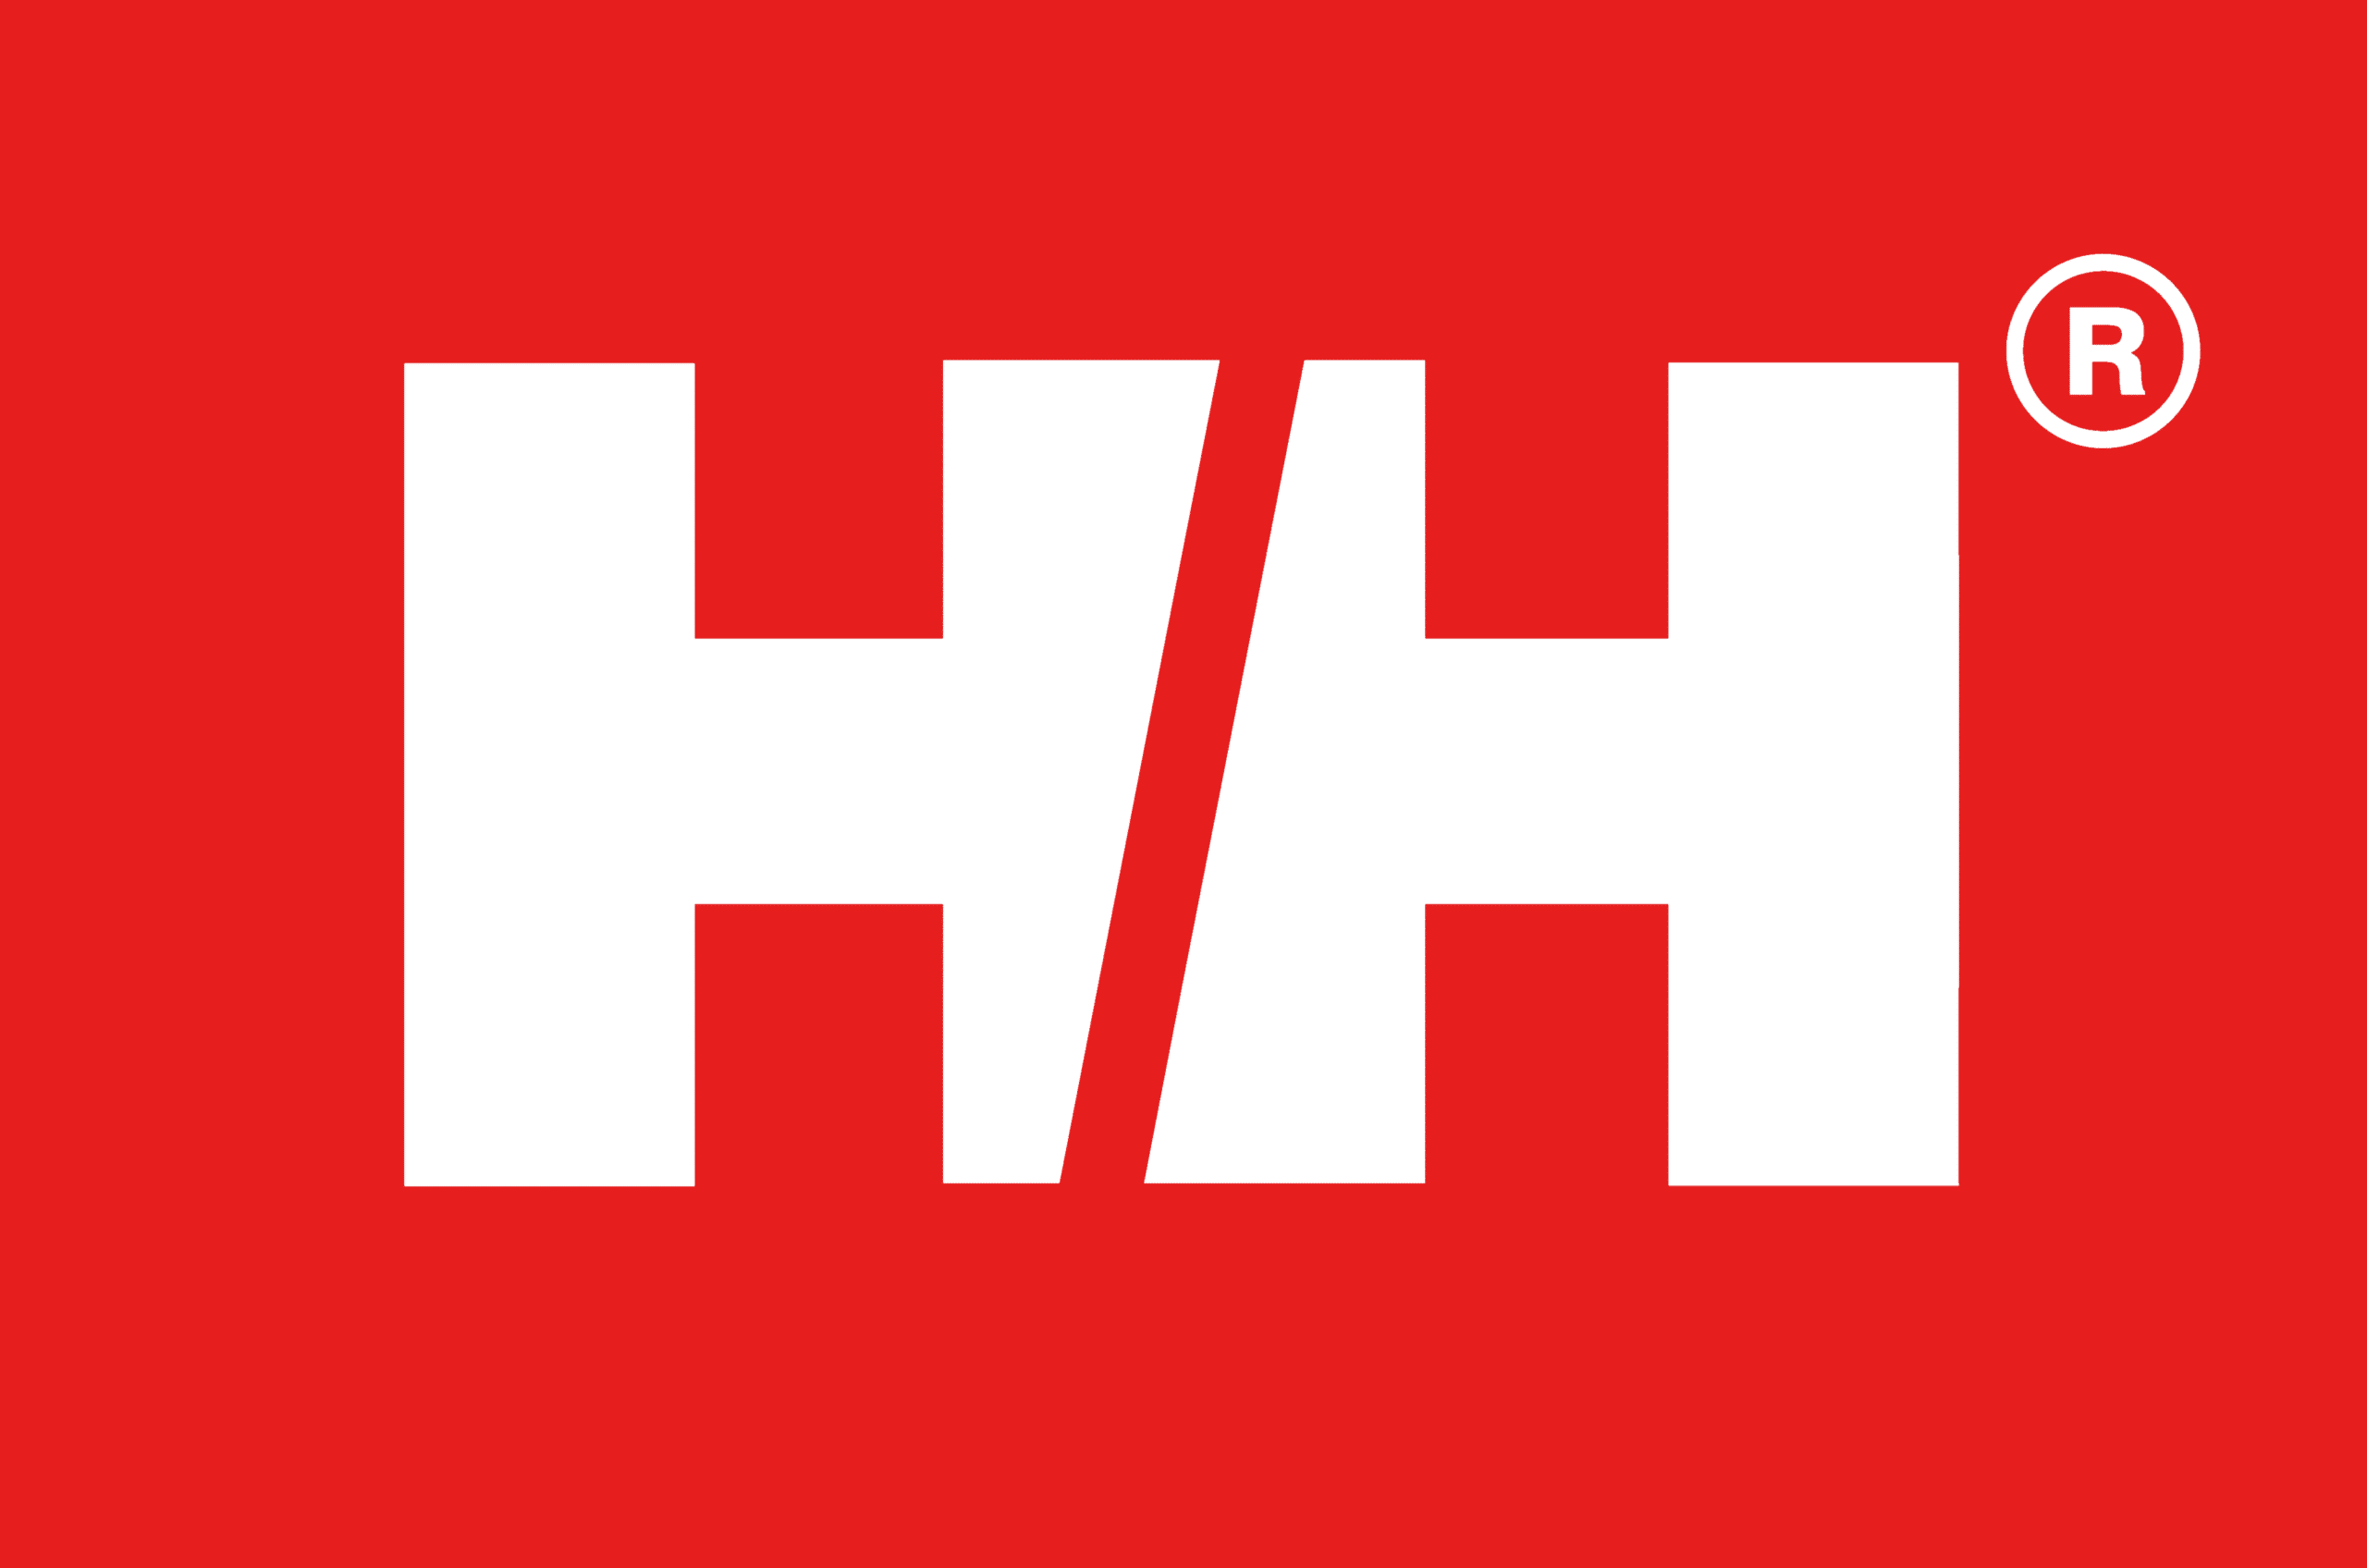 helly-hansen